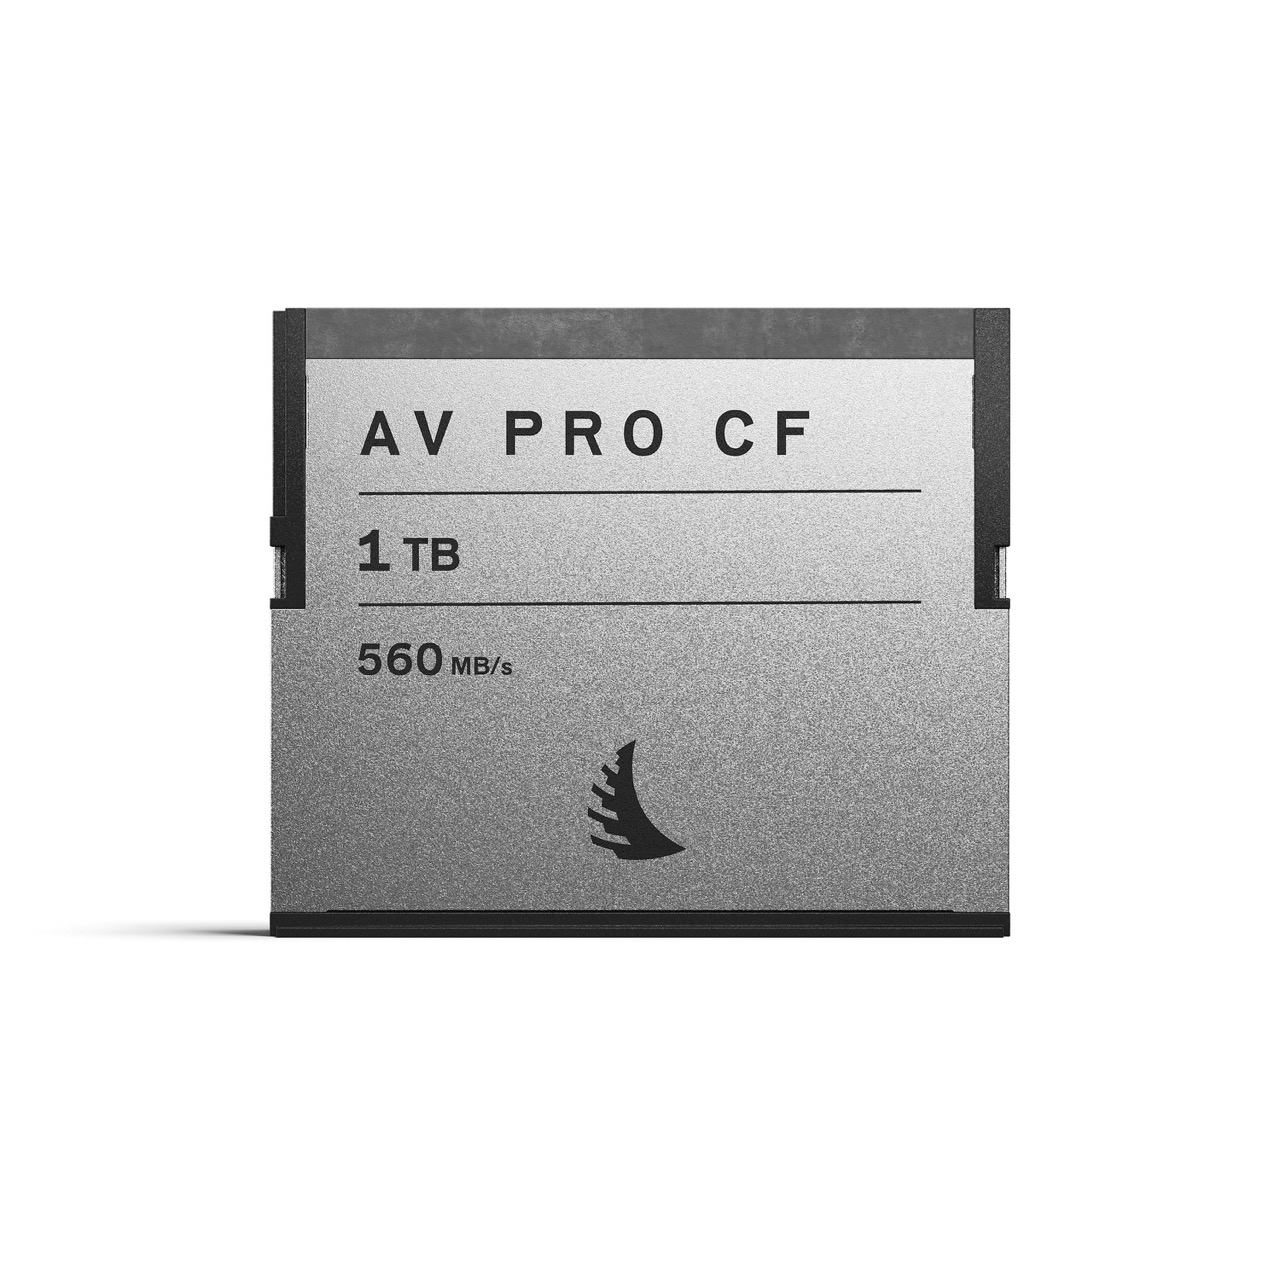 ANgelbird AV Pro CF 1 TB Speicherkarte, Frontal